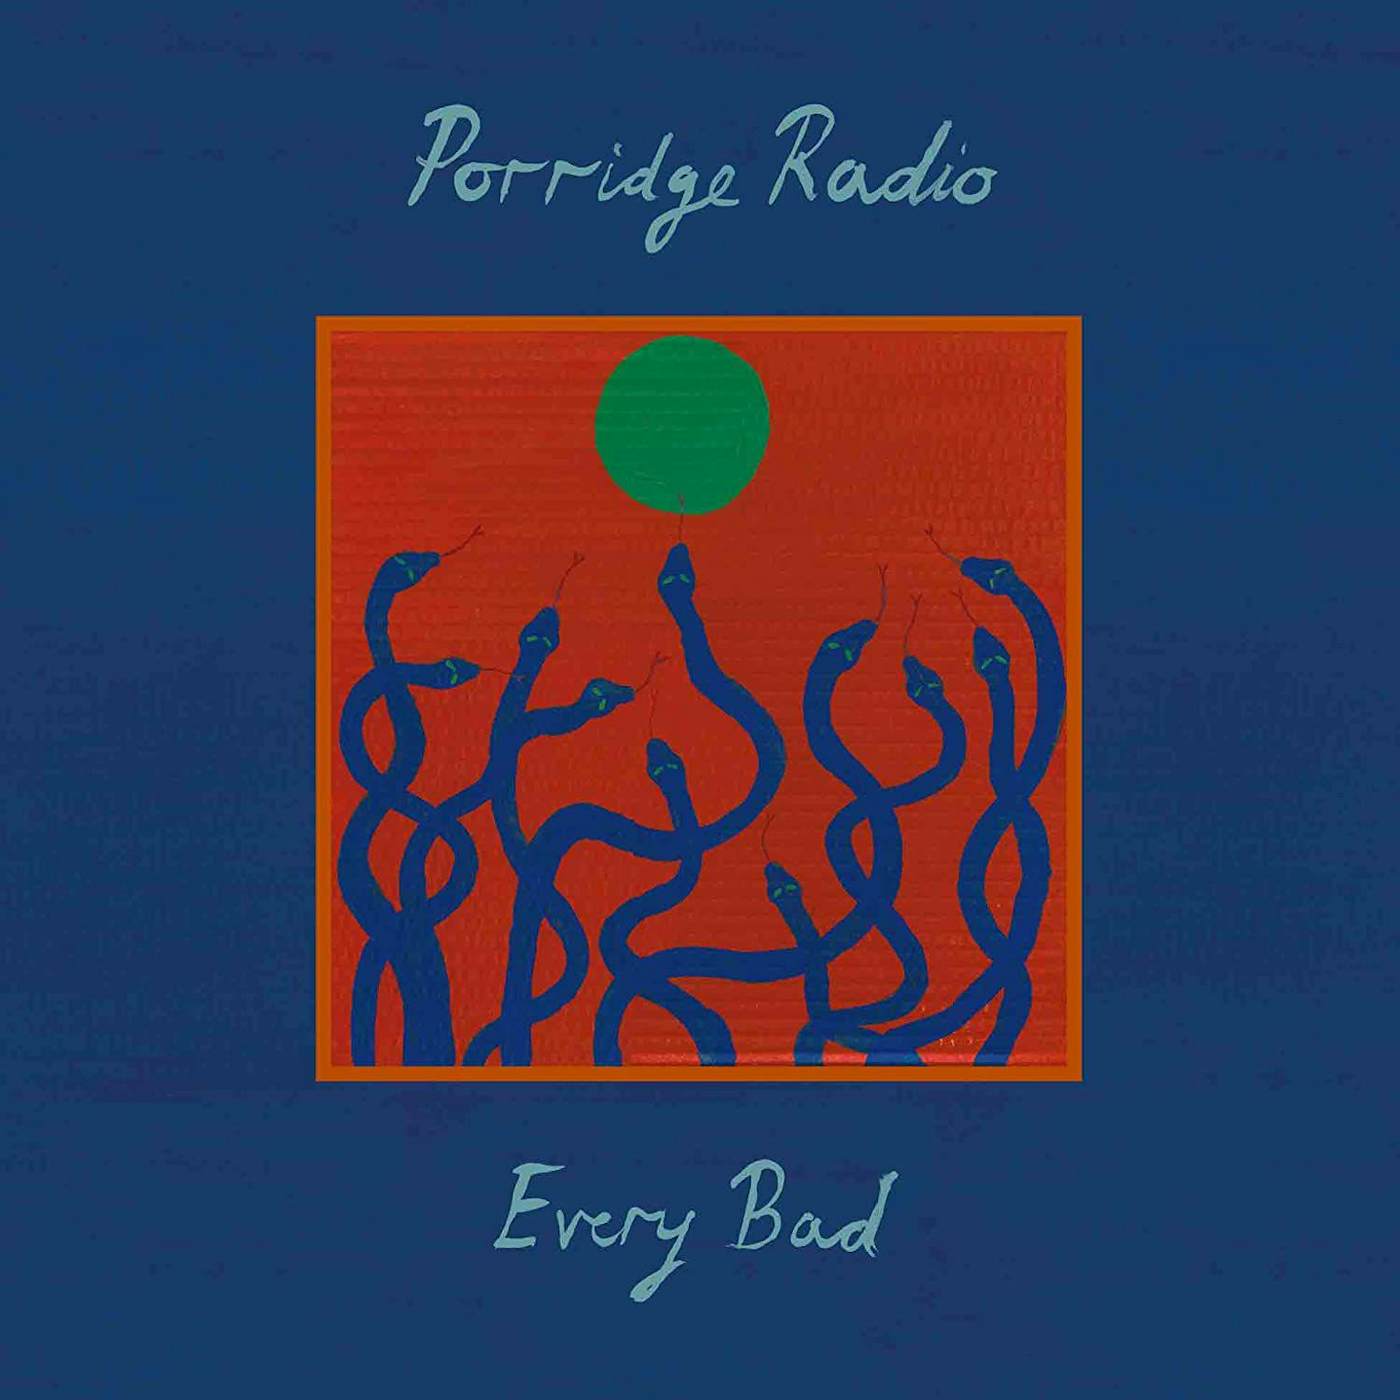 Porridge Radio Every Bad Vinyl Record